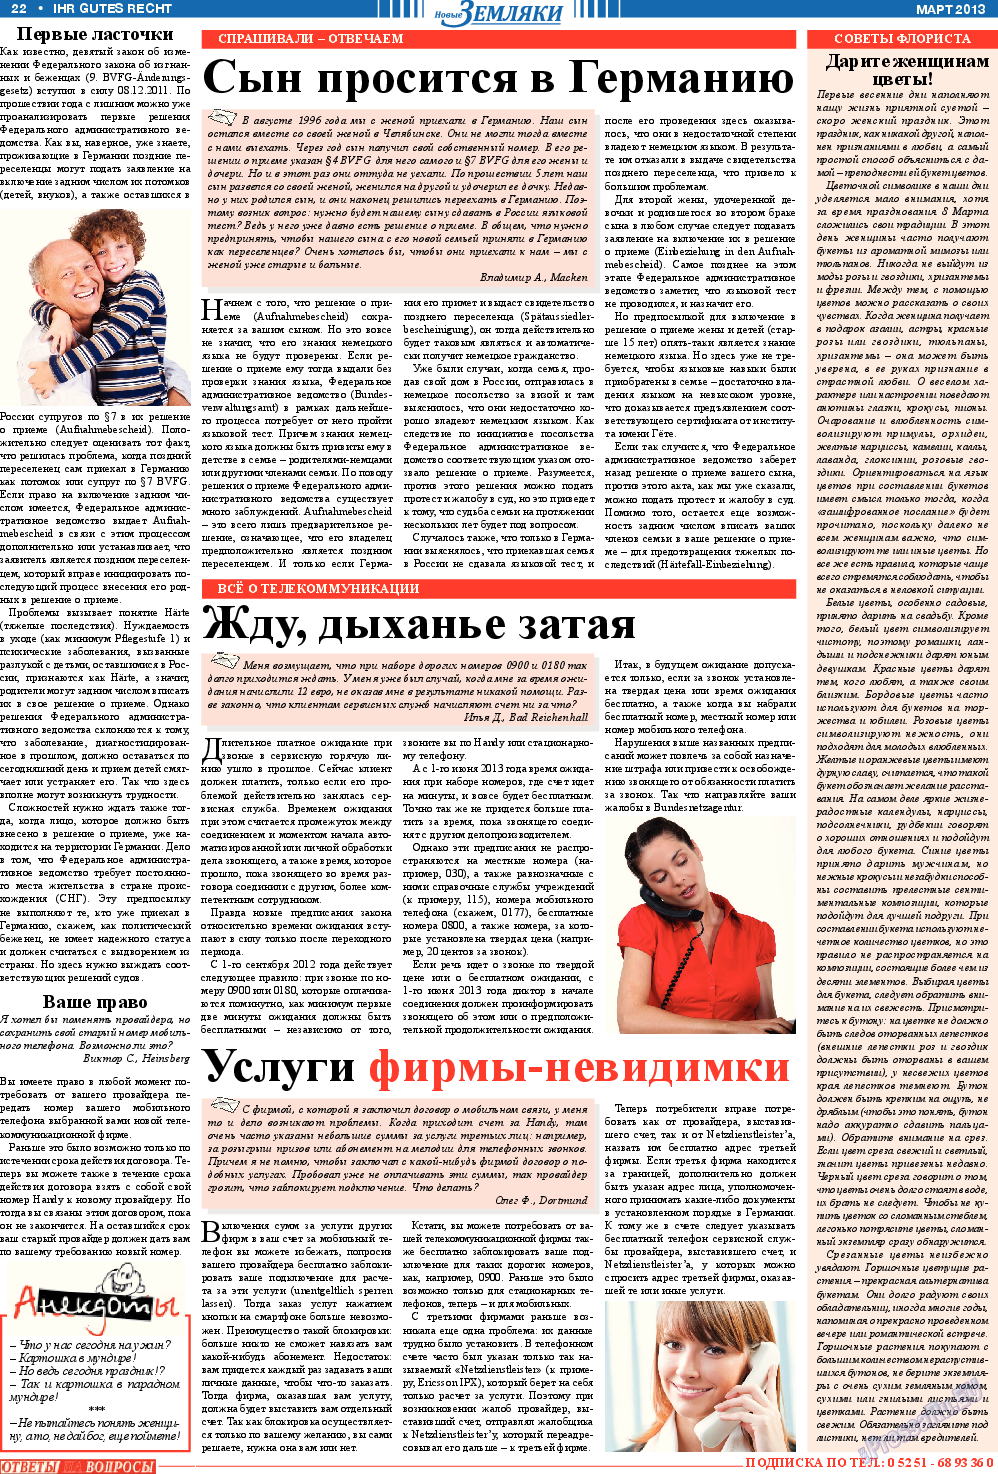 Новые Земляки (газета). 2013 год, номер 3, стр. 22